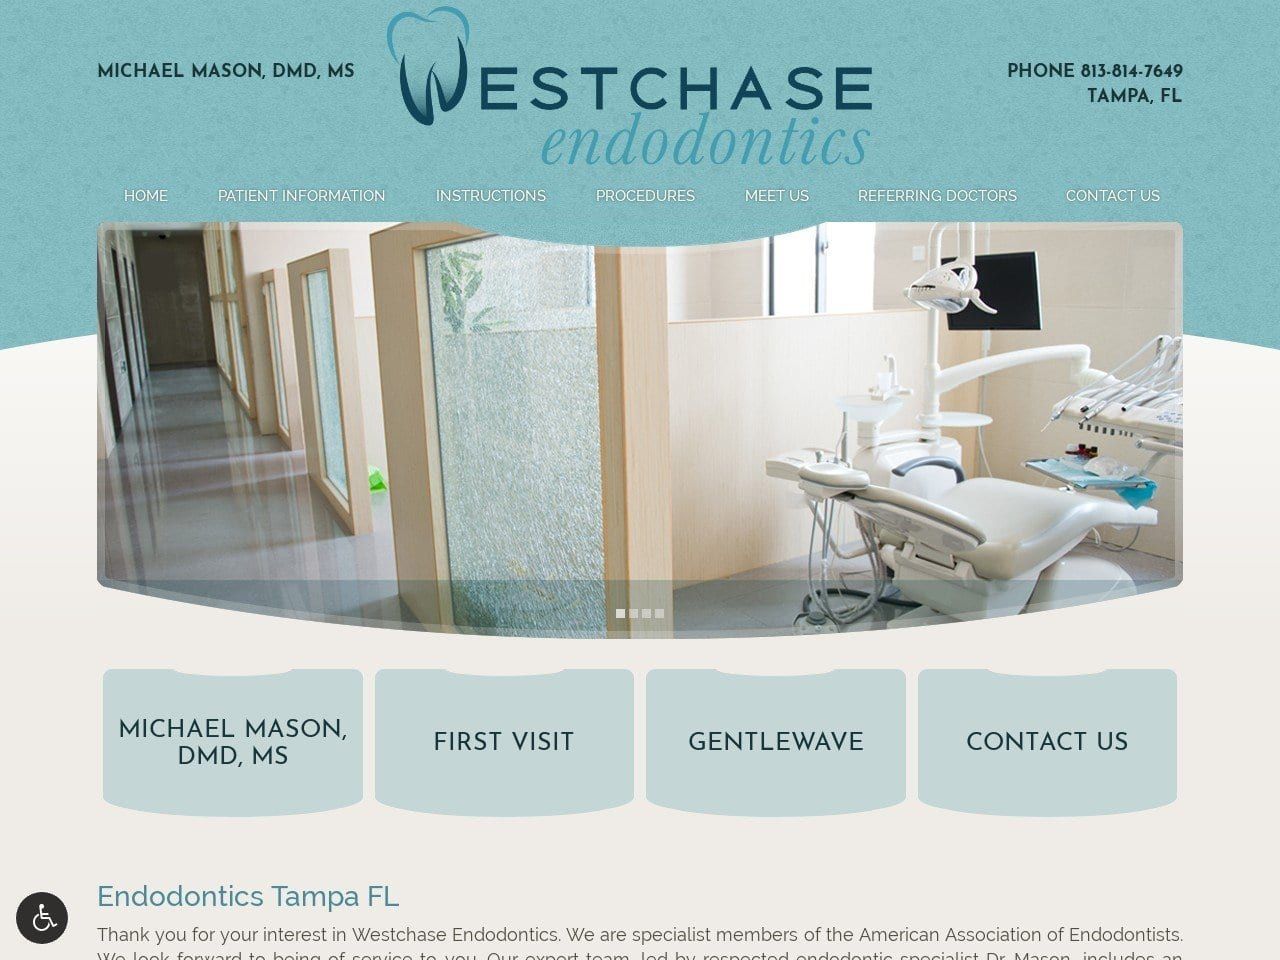 Westchase Endodontics Website Screenshot from wcendo.com